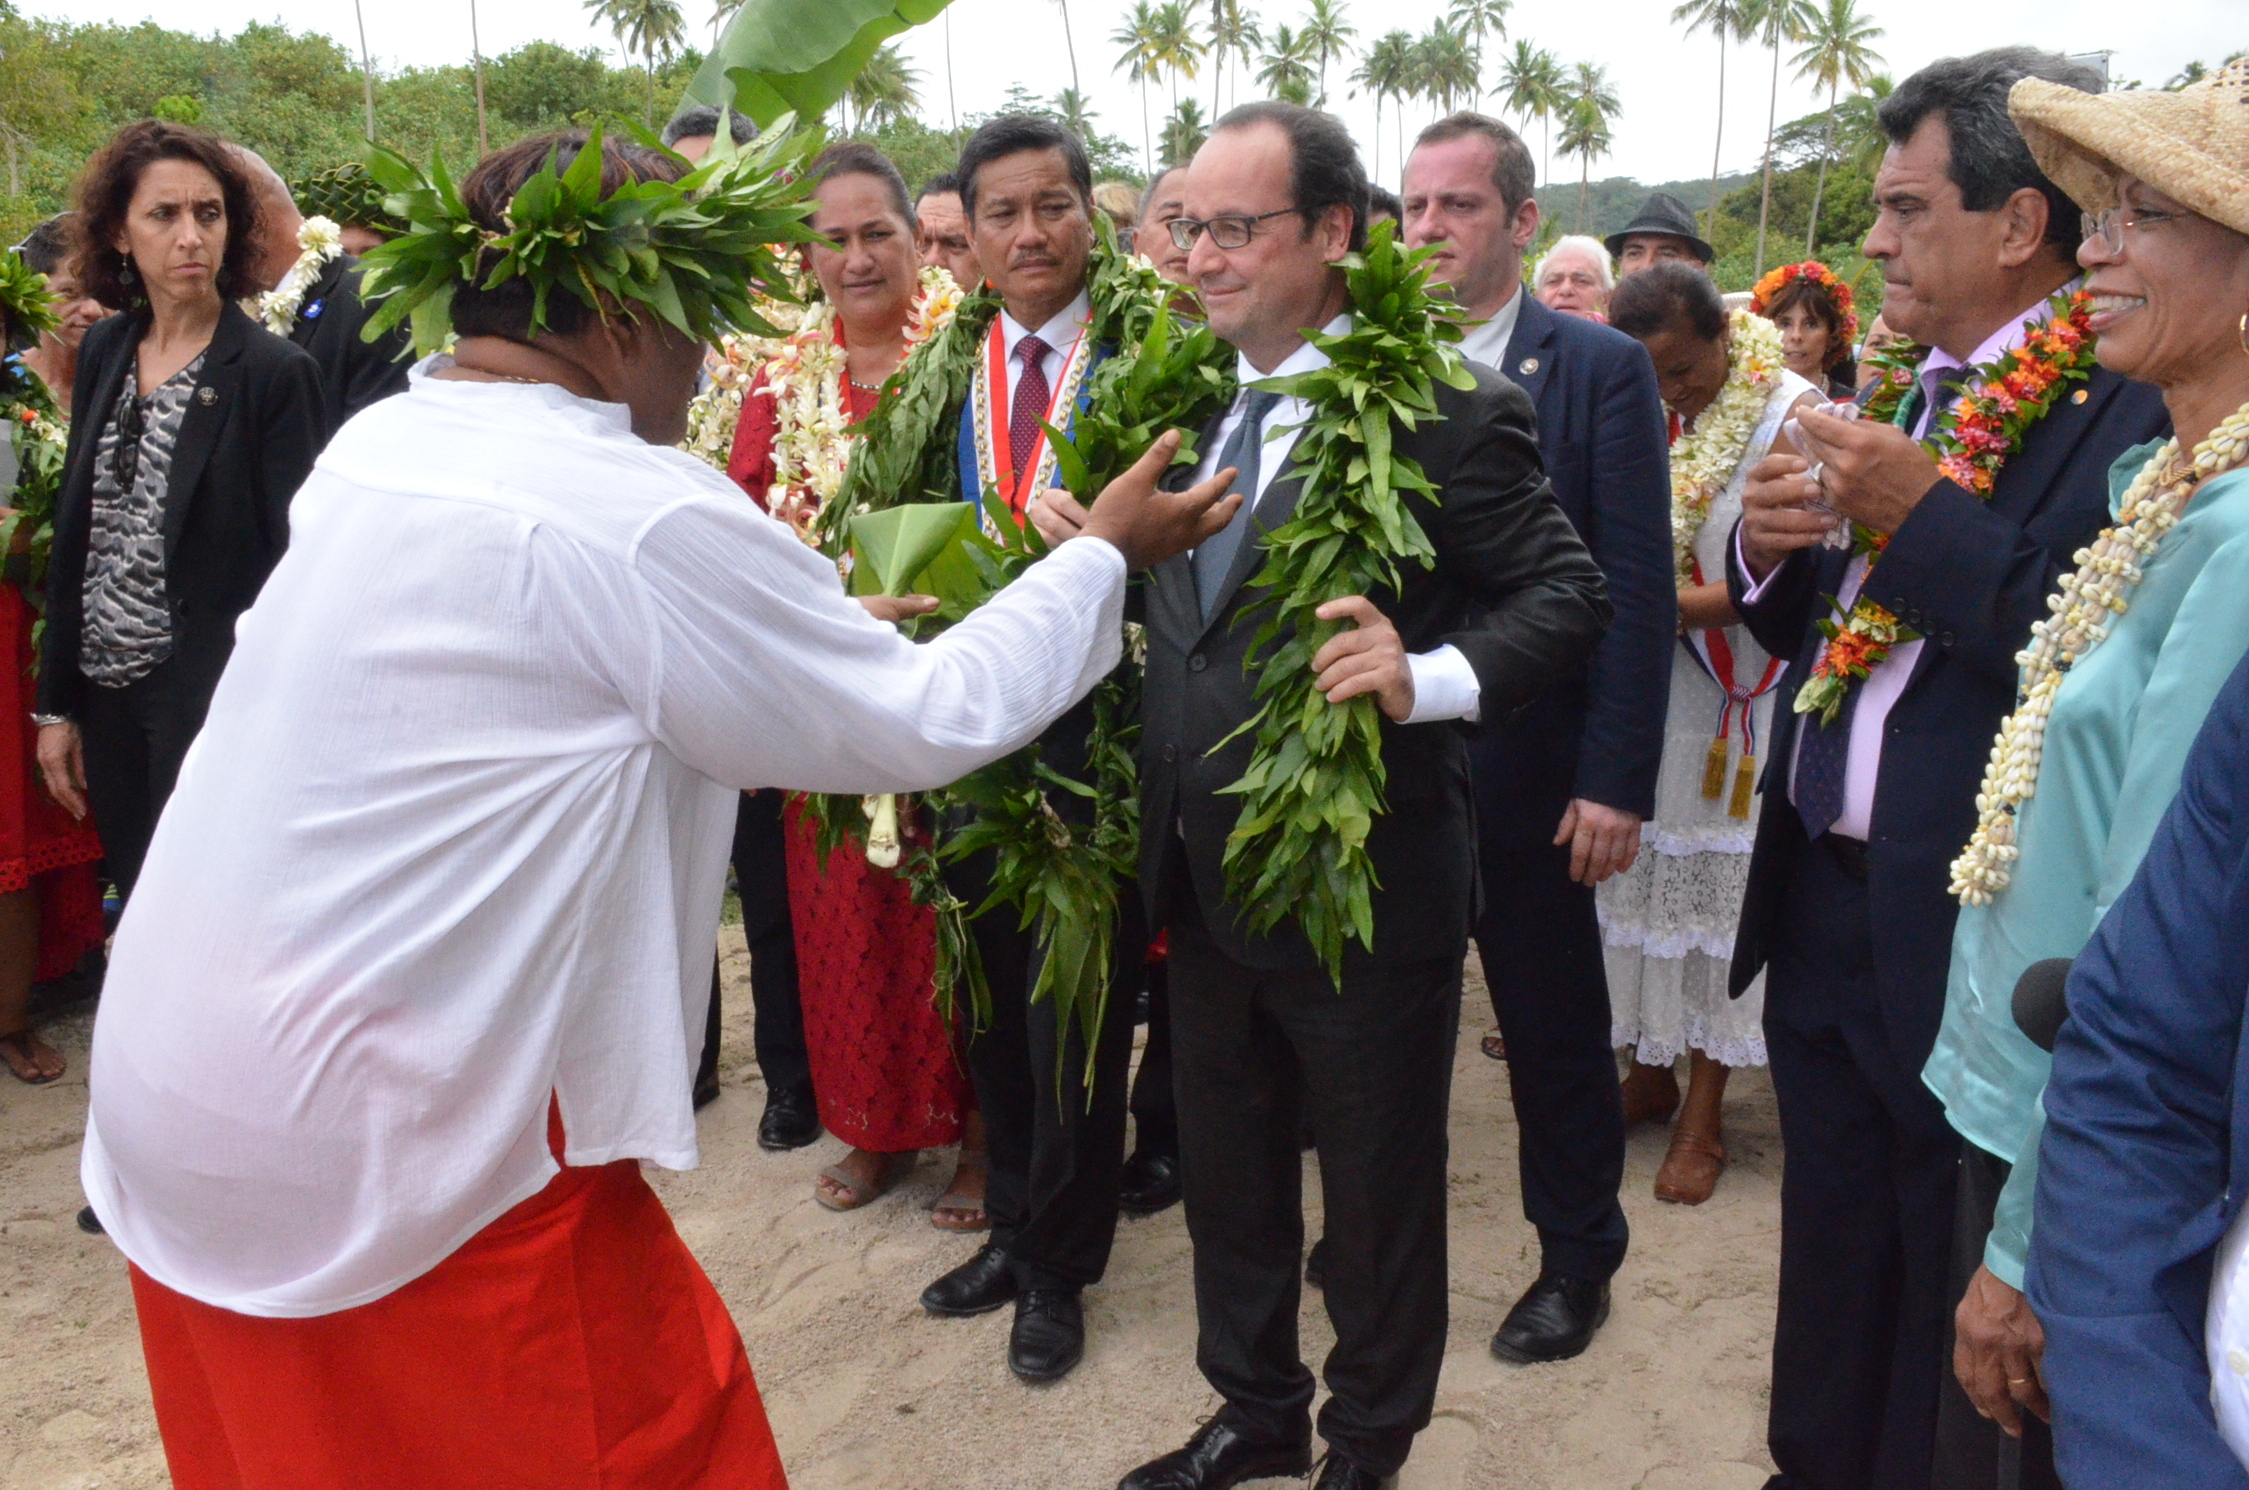 Le président de la République avait annoncé au marae de Taputapuātea que l'État apporterait son soutien pour l'obtention du label Patrimoine mondial de l'Unesco du "paysage culturel de Taputapuātea".